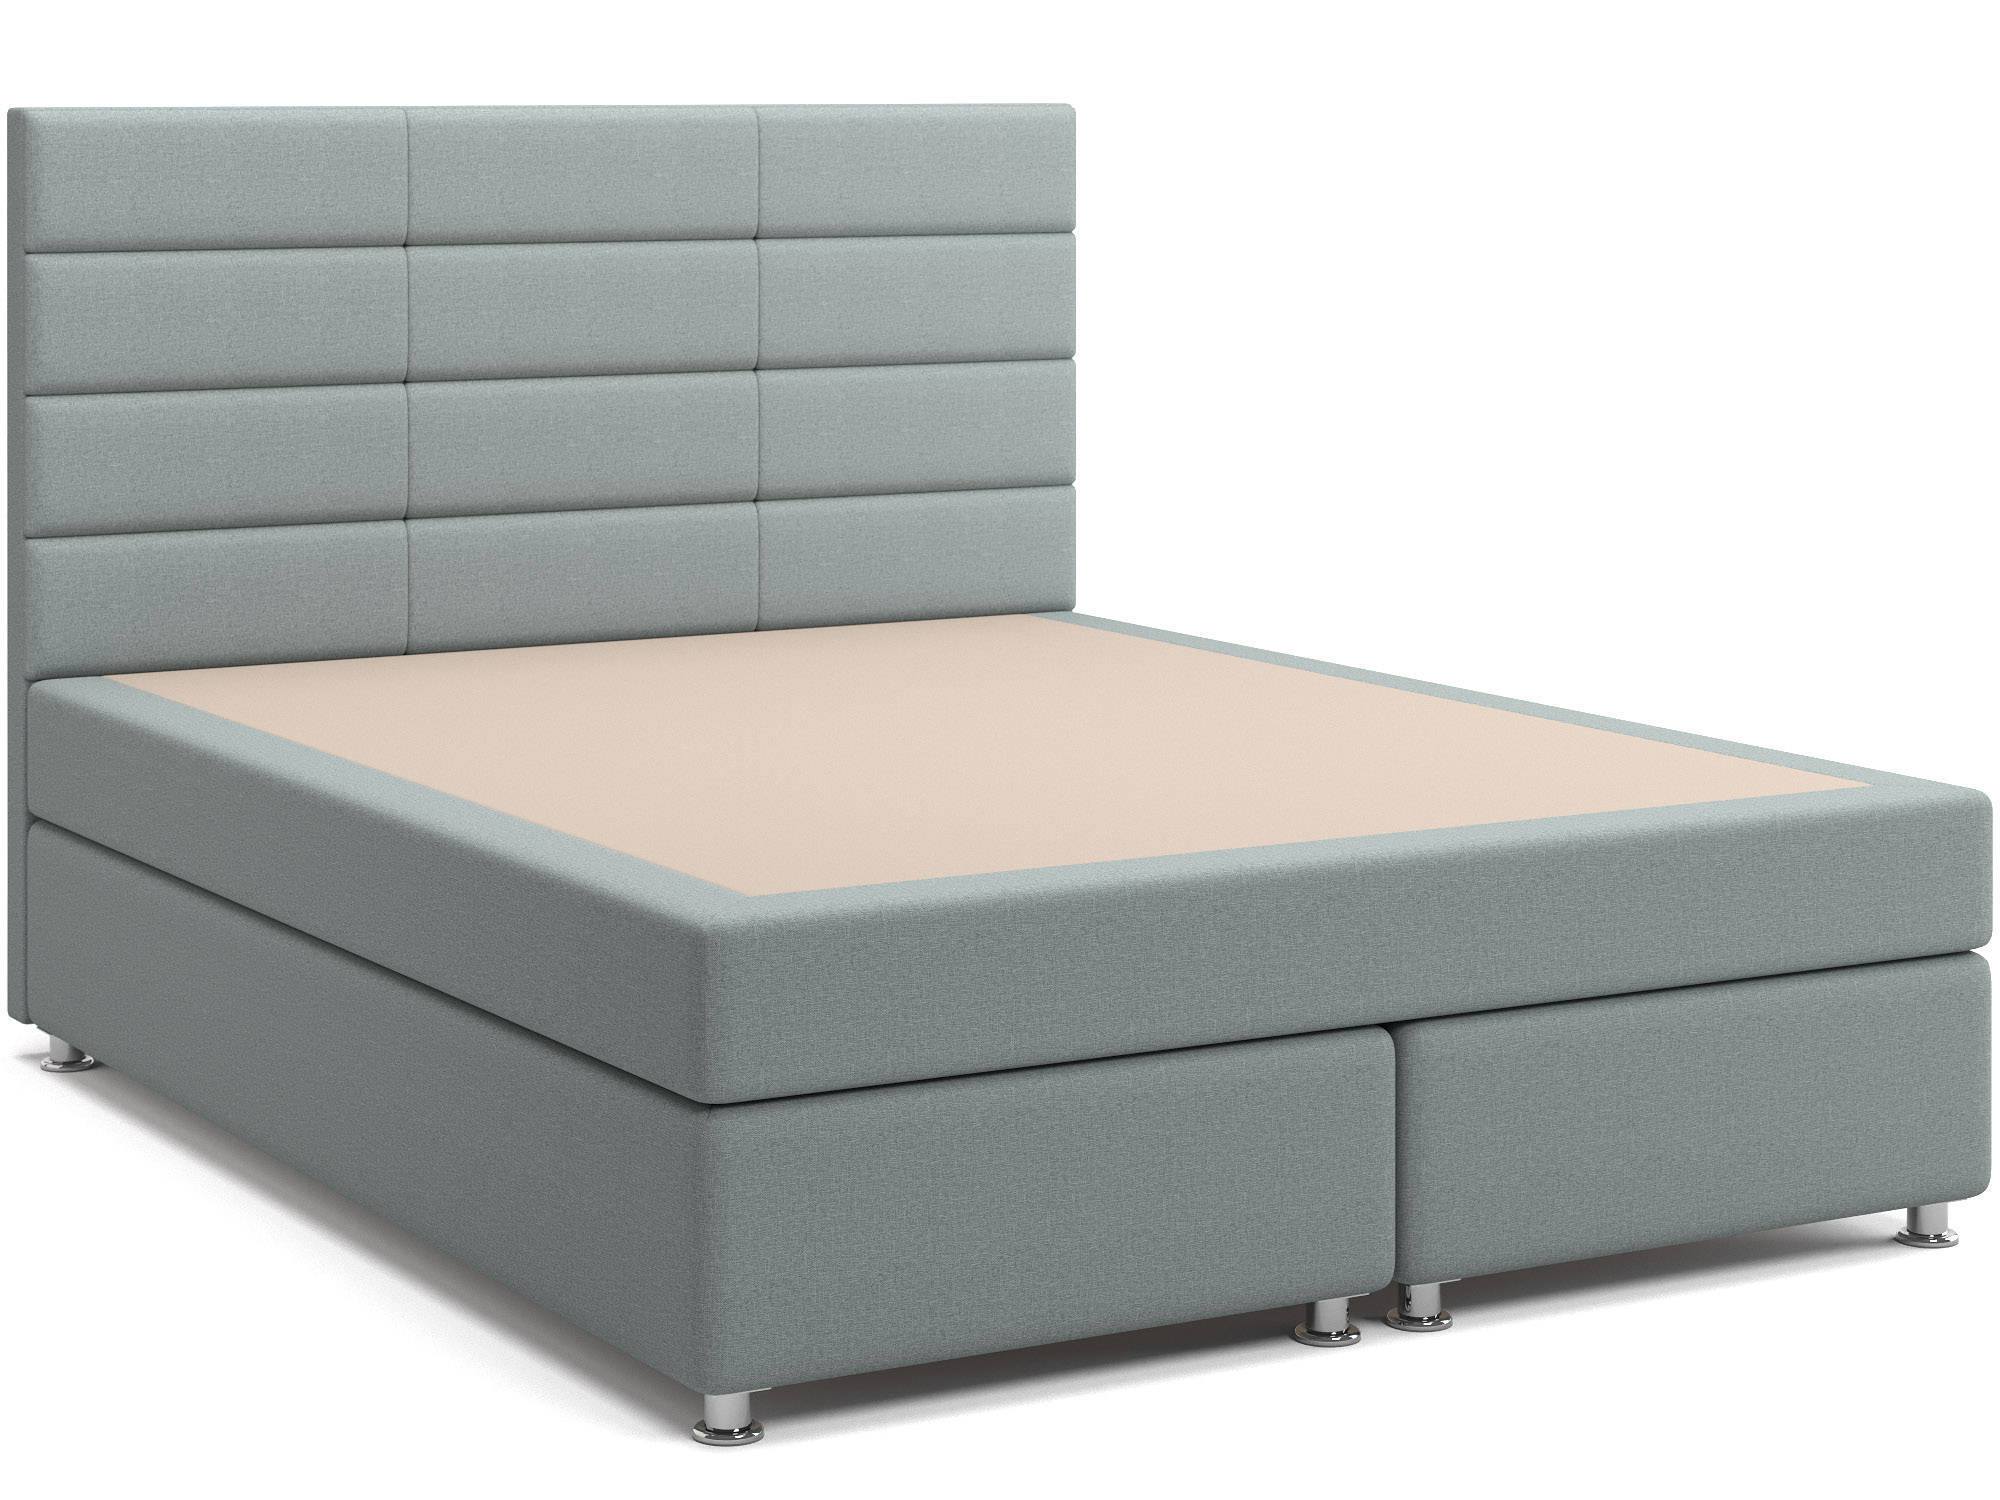 Кровать с матрасом и зависимым пружинным блоком Бриз (160х200) Box Spring ДСП, ДВП idealbeds мягкая кровать modena box